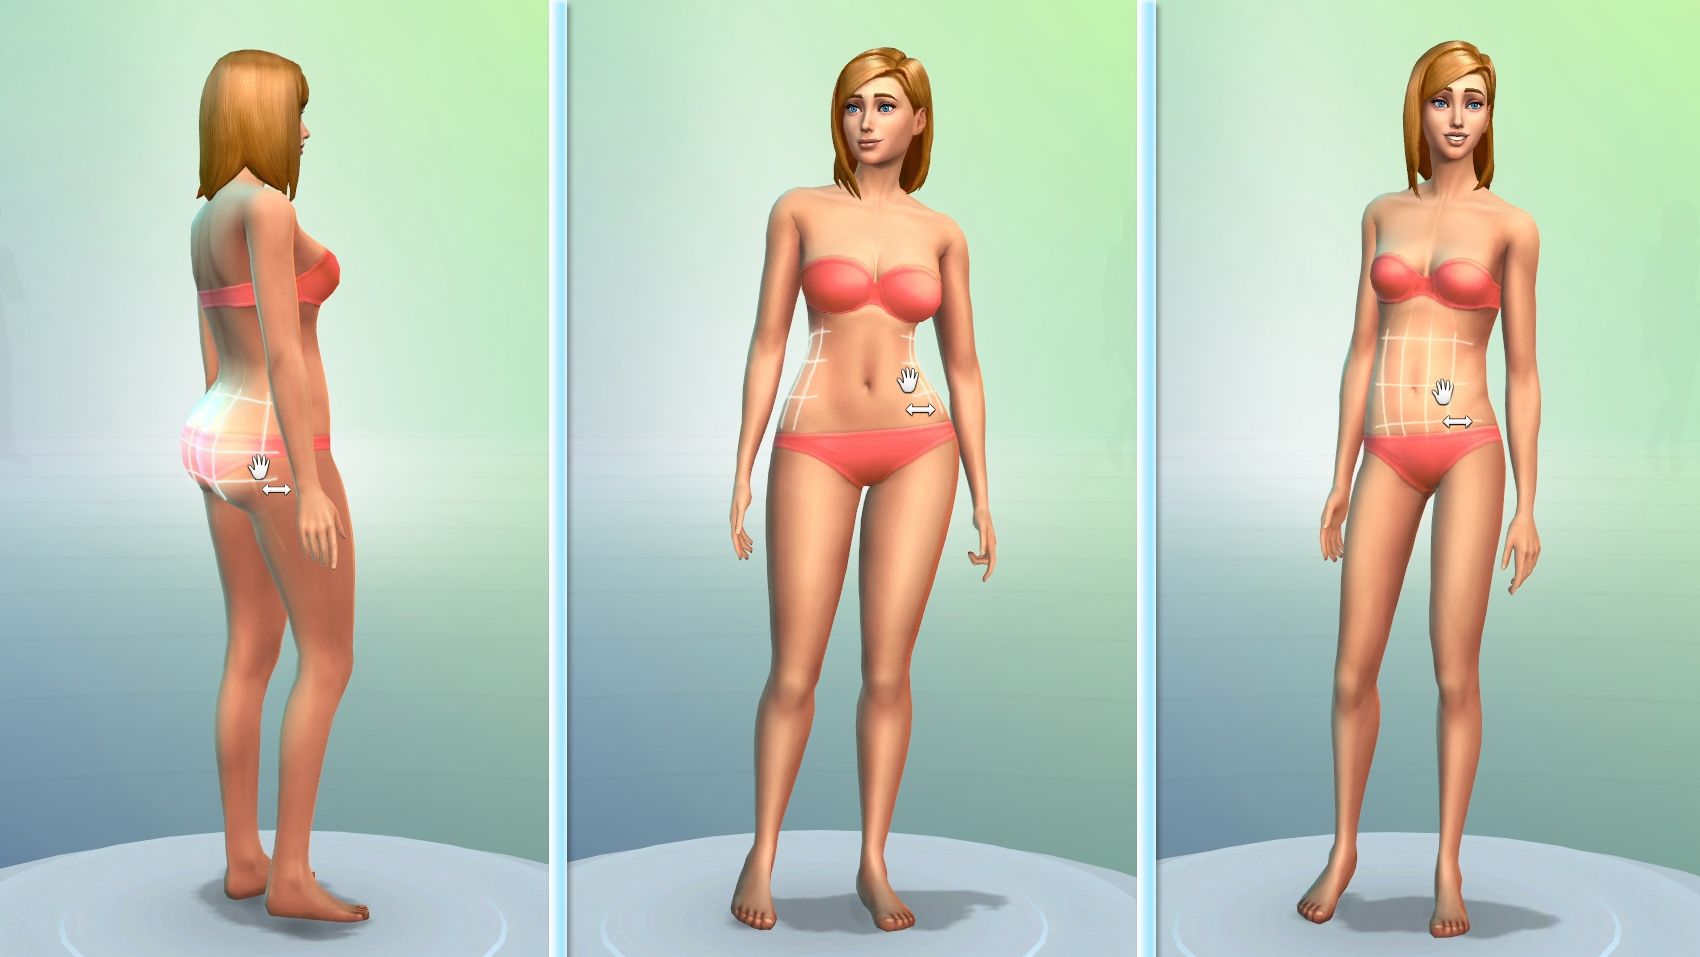 Les Sims 4 : scandale autour de scènes d'inceste